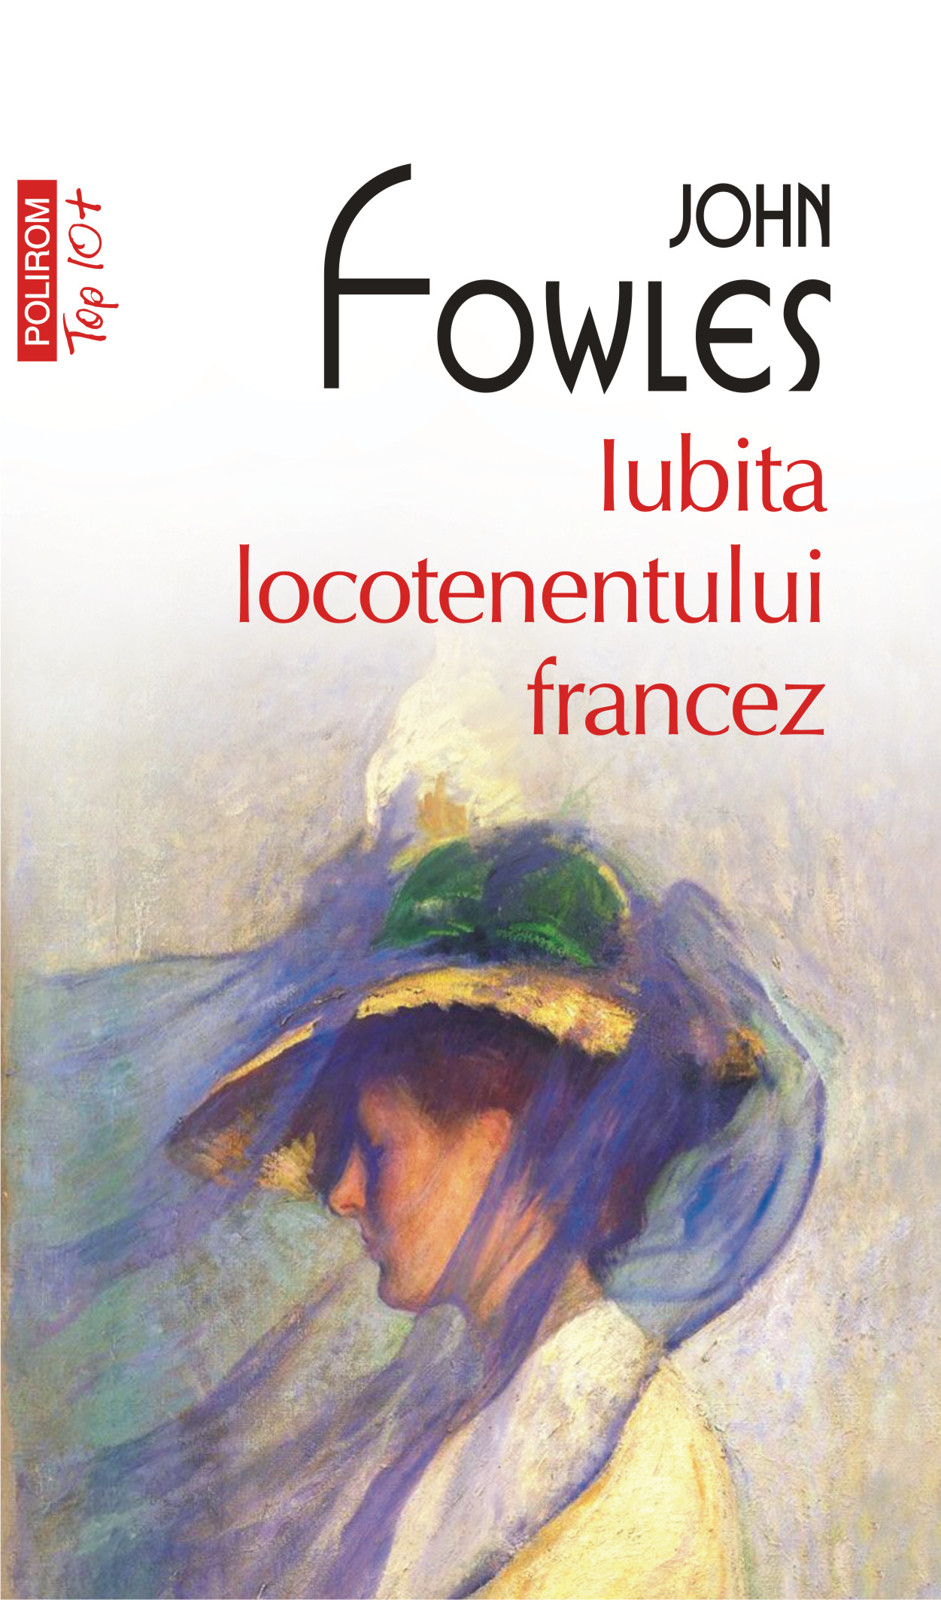 eBook Iubita locotenentului francez - John Fowles